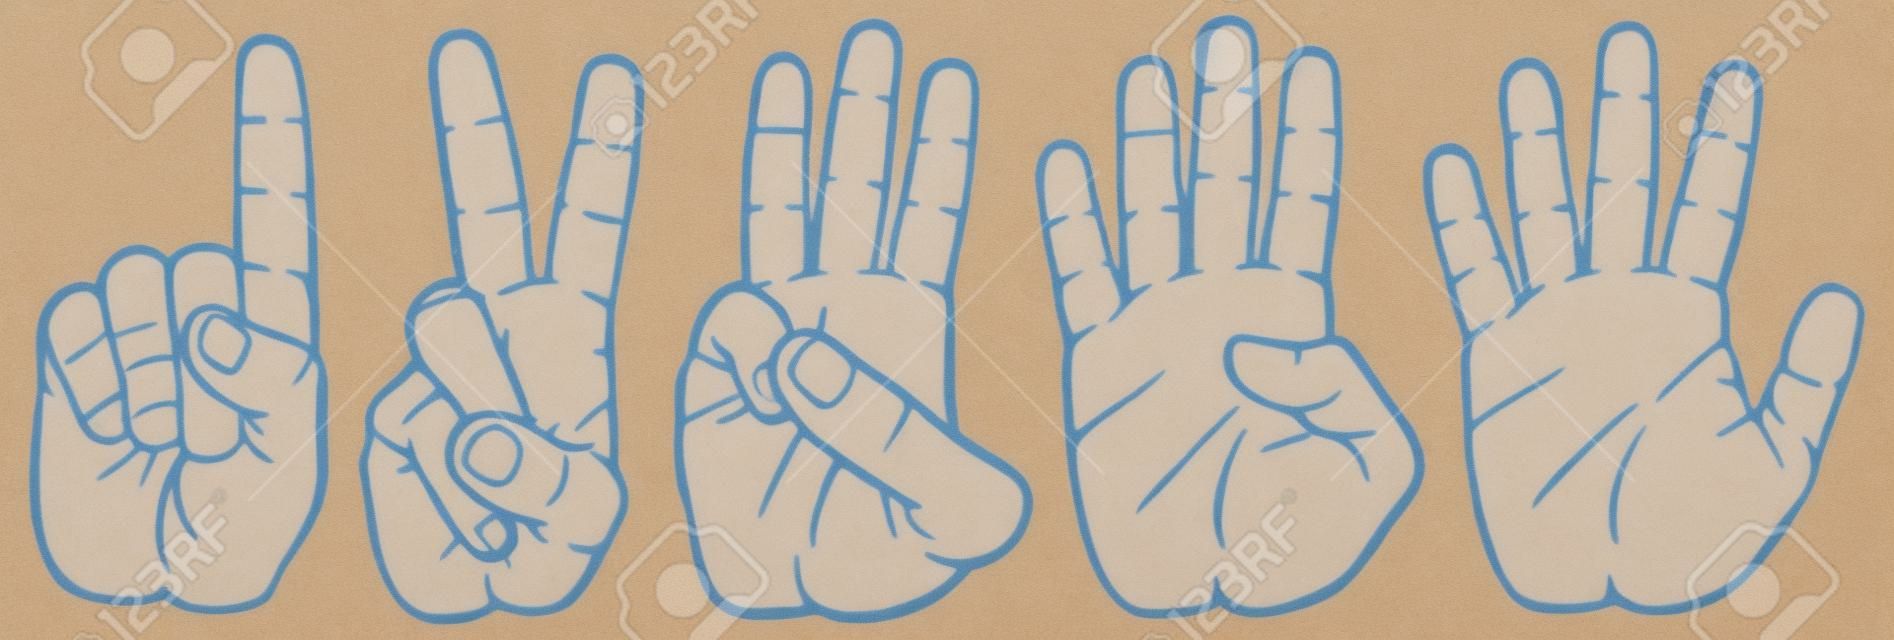 het tellen van vingers zet de handen signalen, handen en nummers, set van het tellen van de hand teken 1-2-3-4-5